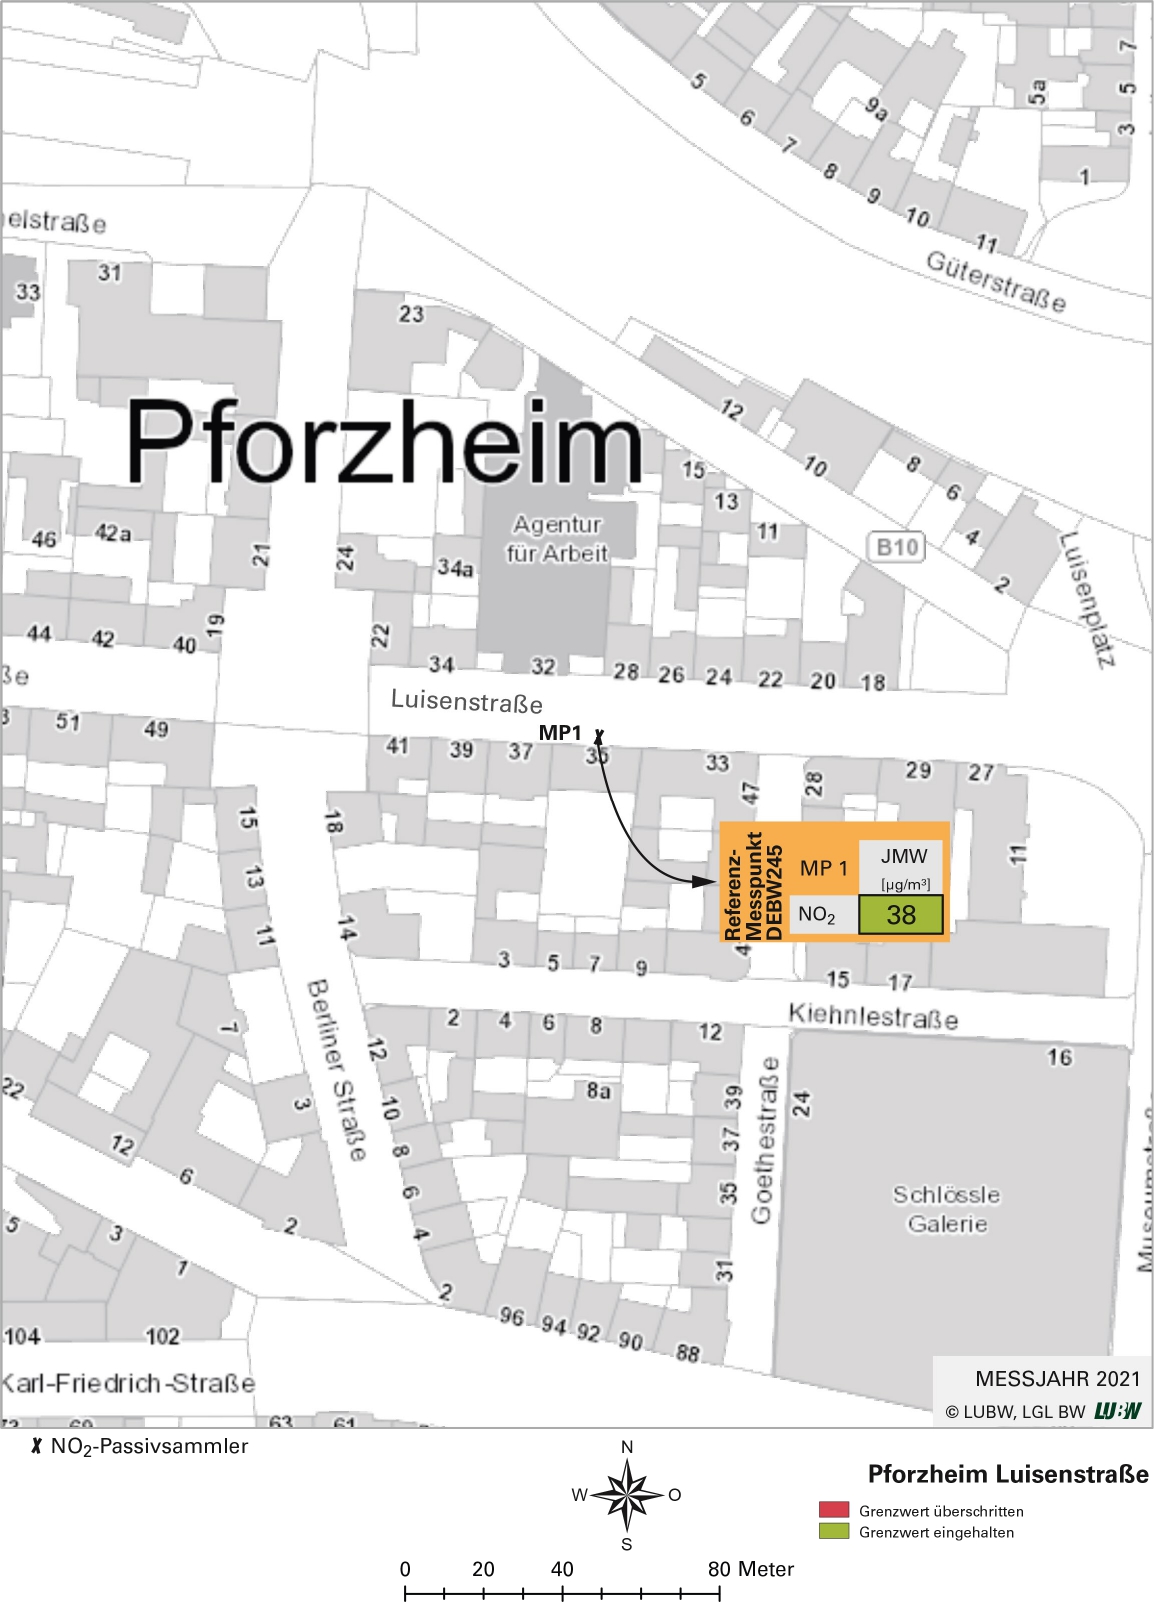 Kartenausschnitt, der die Lage der Messstelle Pforzheim Luisenstraße (Referenzmesspunkt) zeigt. Dargestellt ist zudem das Ergebnis (Jahresmittelwert 2021) der gemessenen Stickstoffdioxidbelastung.